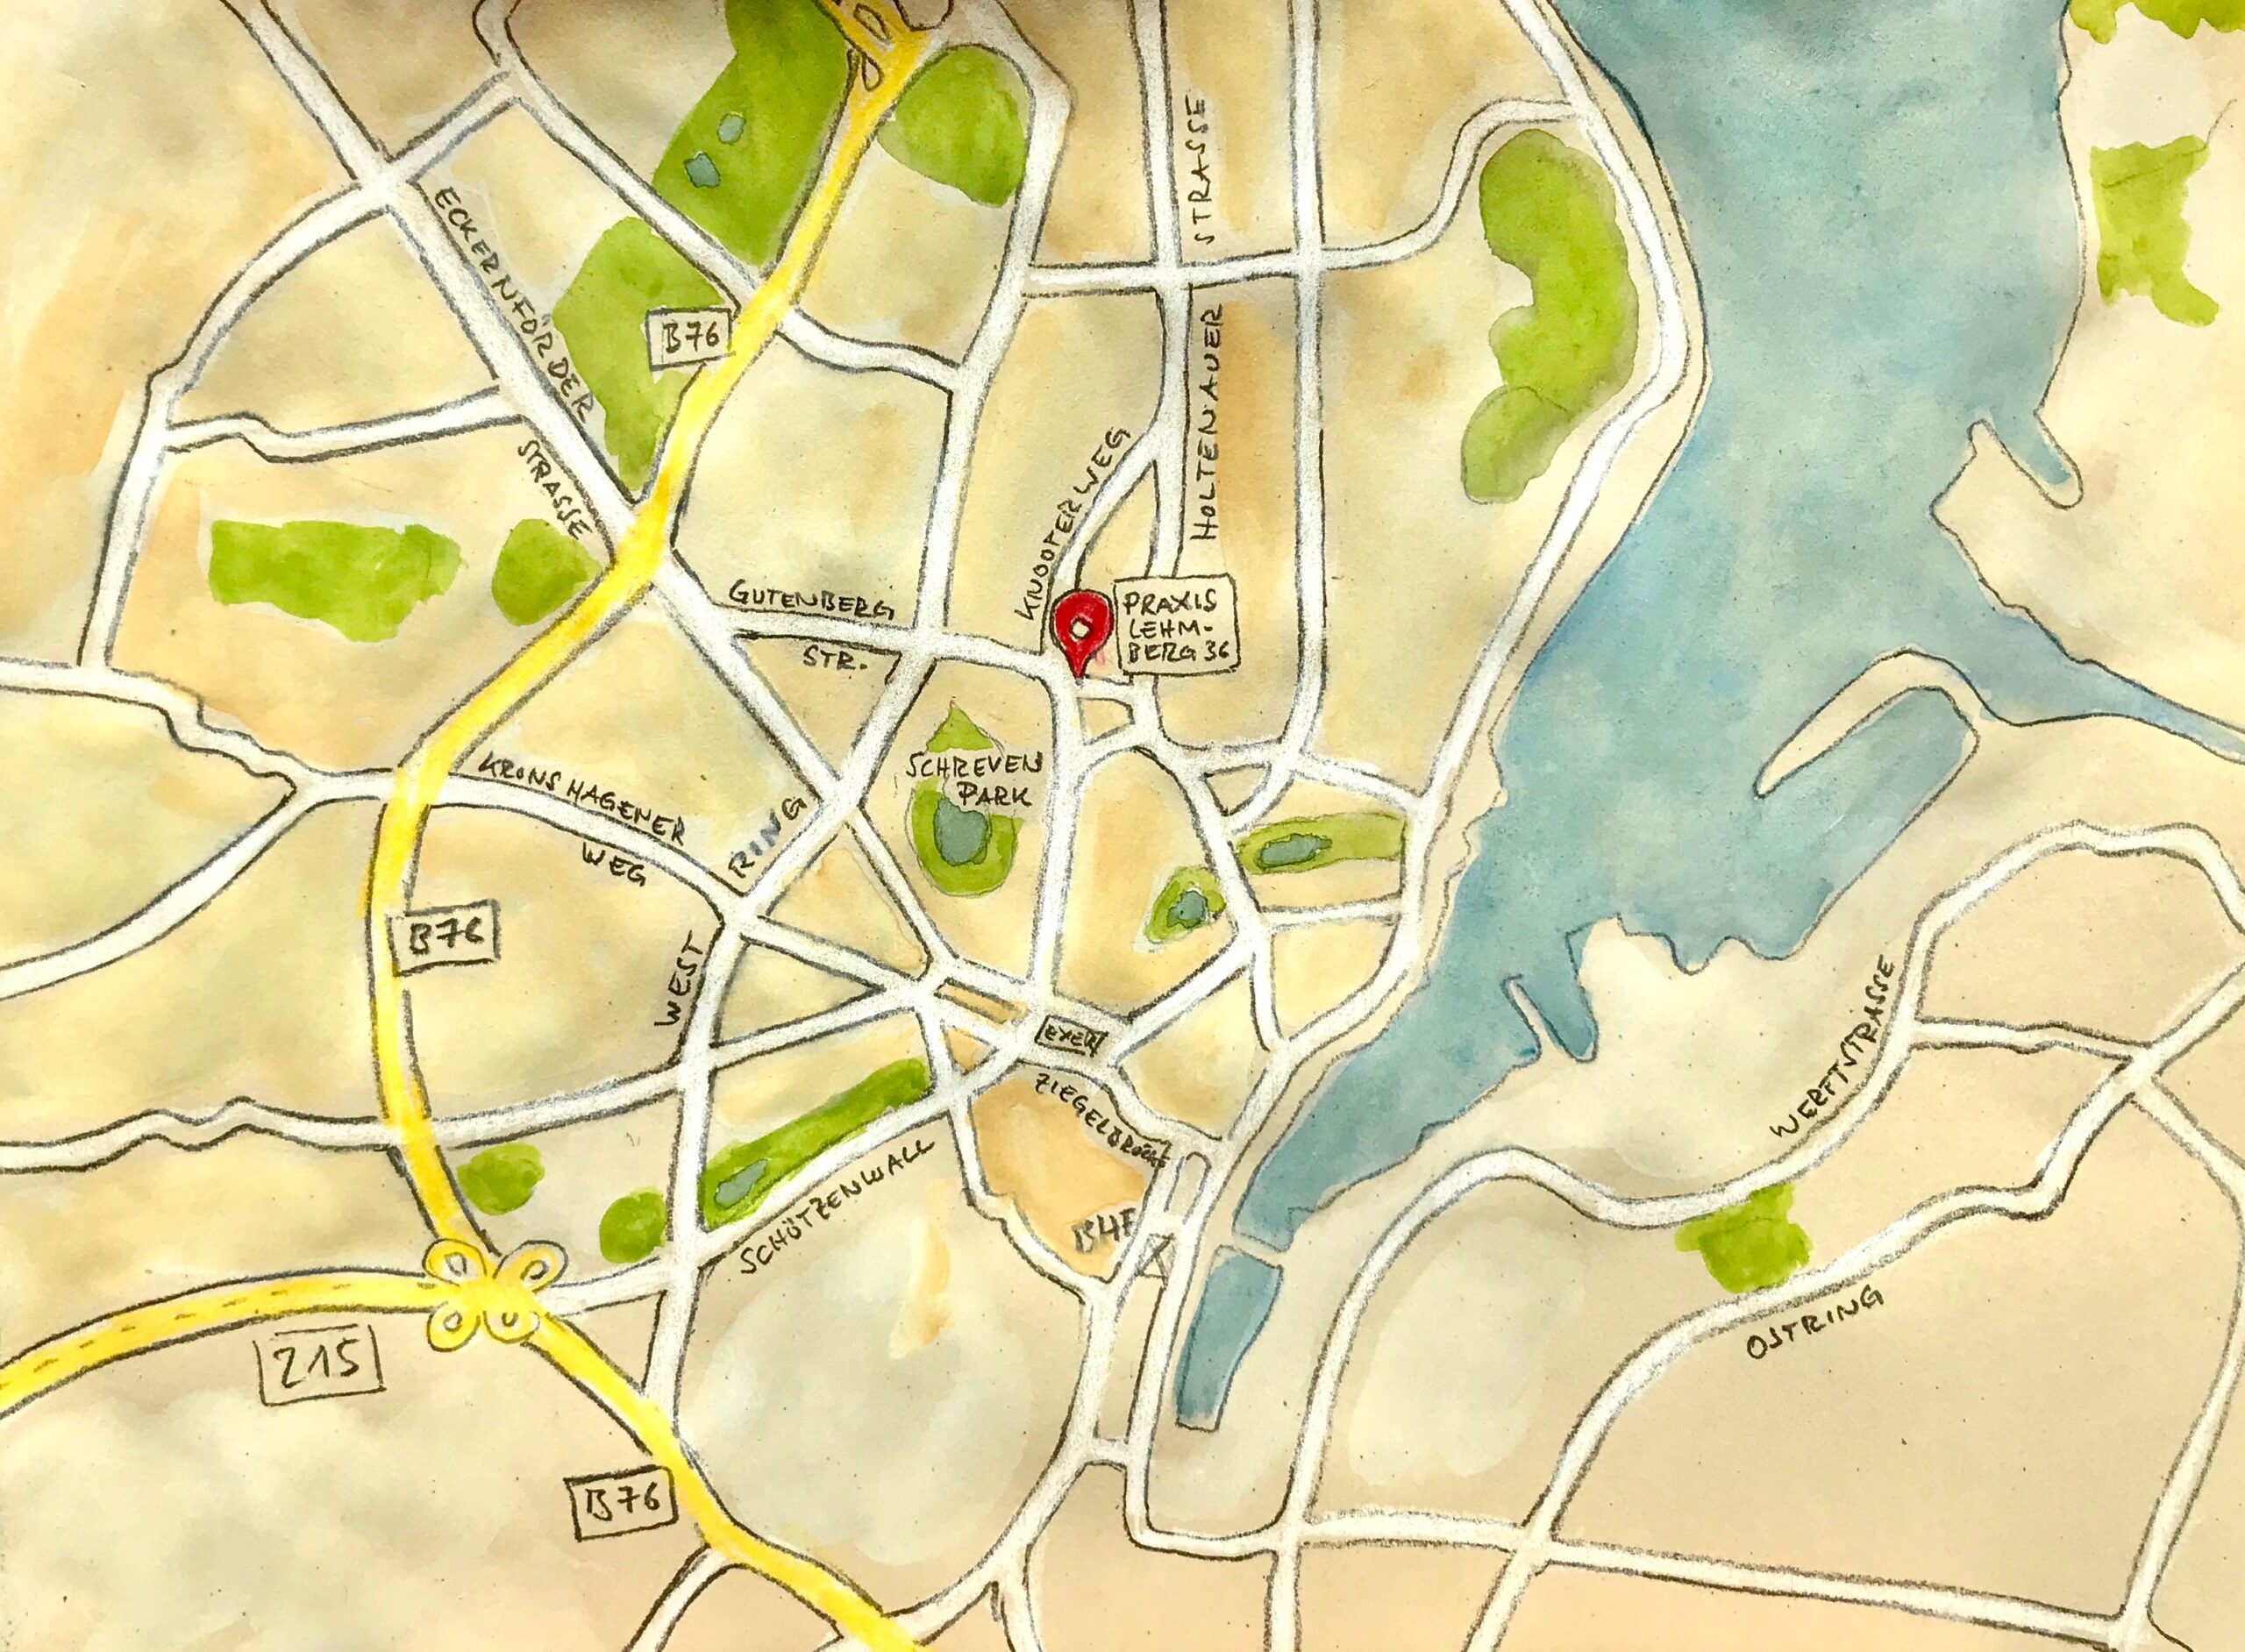 Eine handgezeichnete Karte für die Routenplanung. Die Praxis von Dr. Nina Jaenisch findet sich in zentraler Lage in Kiel, in unmittelbarer Nähe des Schrevenparks. Kontakt können Sie gerne über 0178-3396092 aufnehmen.